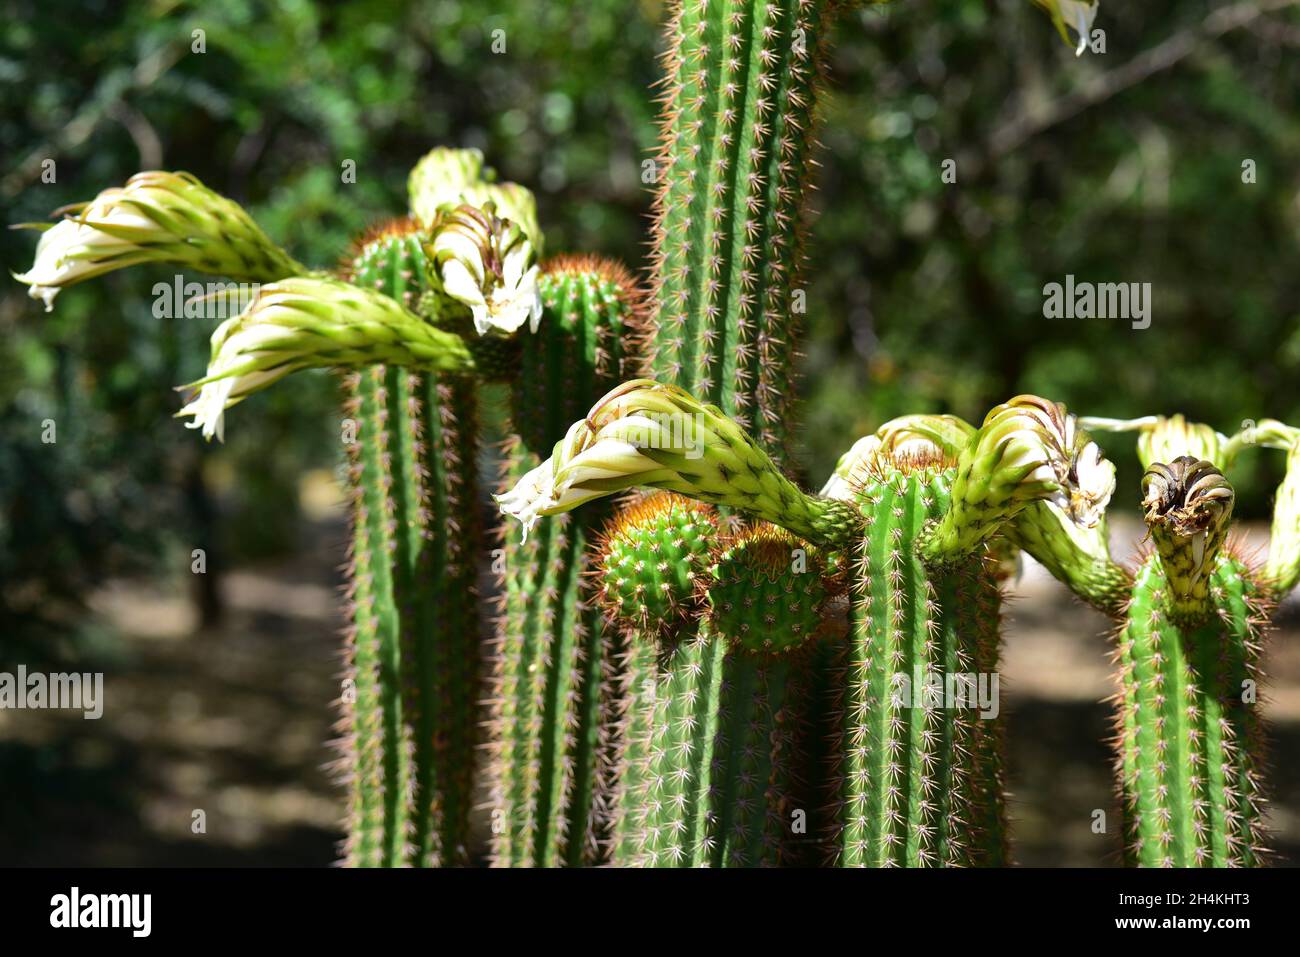 La antorcha de oro (Echinopsis spachiana) es un cactus nativo de Argentina. Foto de stock